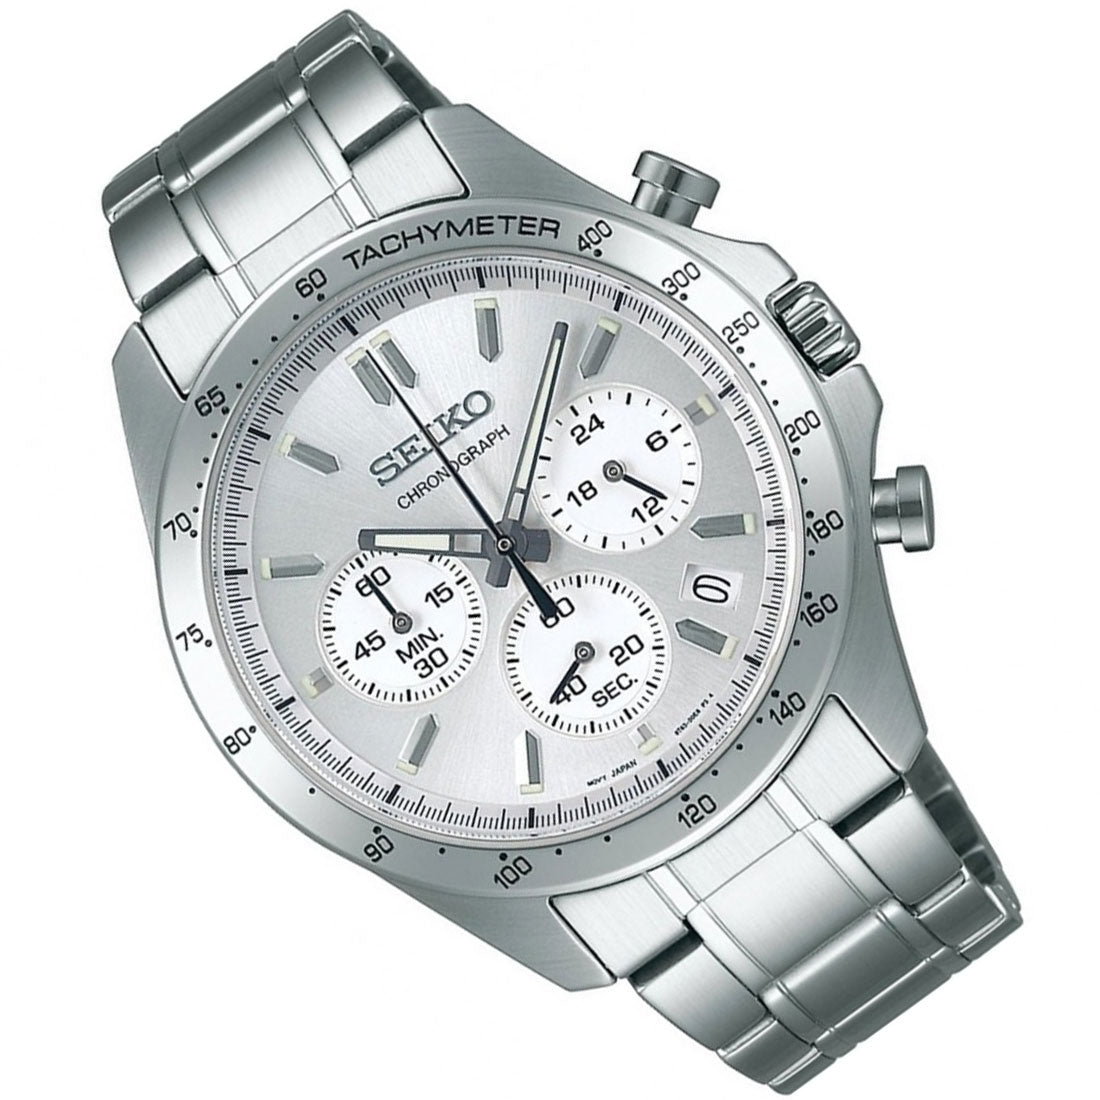 Seiko Spirit JDM Selection Chronograph SBTR009 Silver Dial Quartz Stainless Steel Watch -Seiko